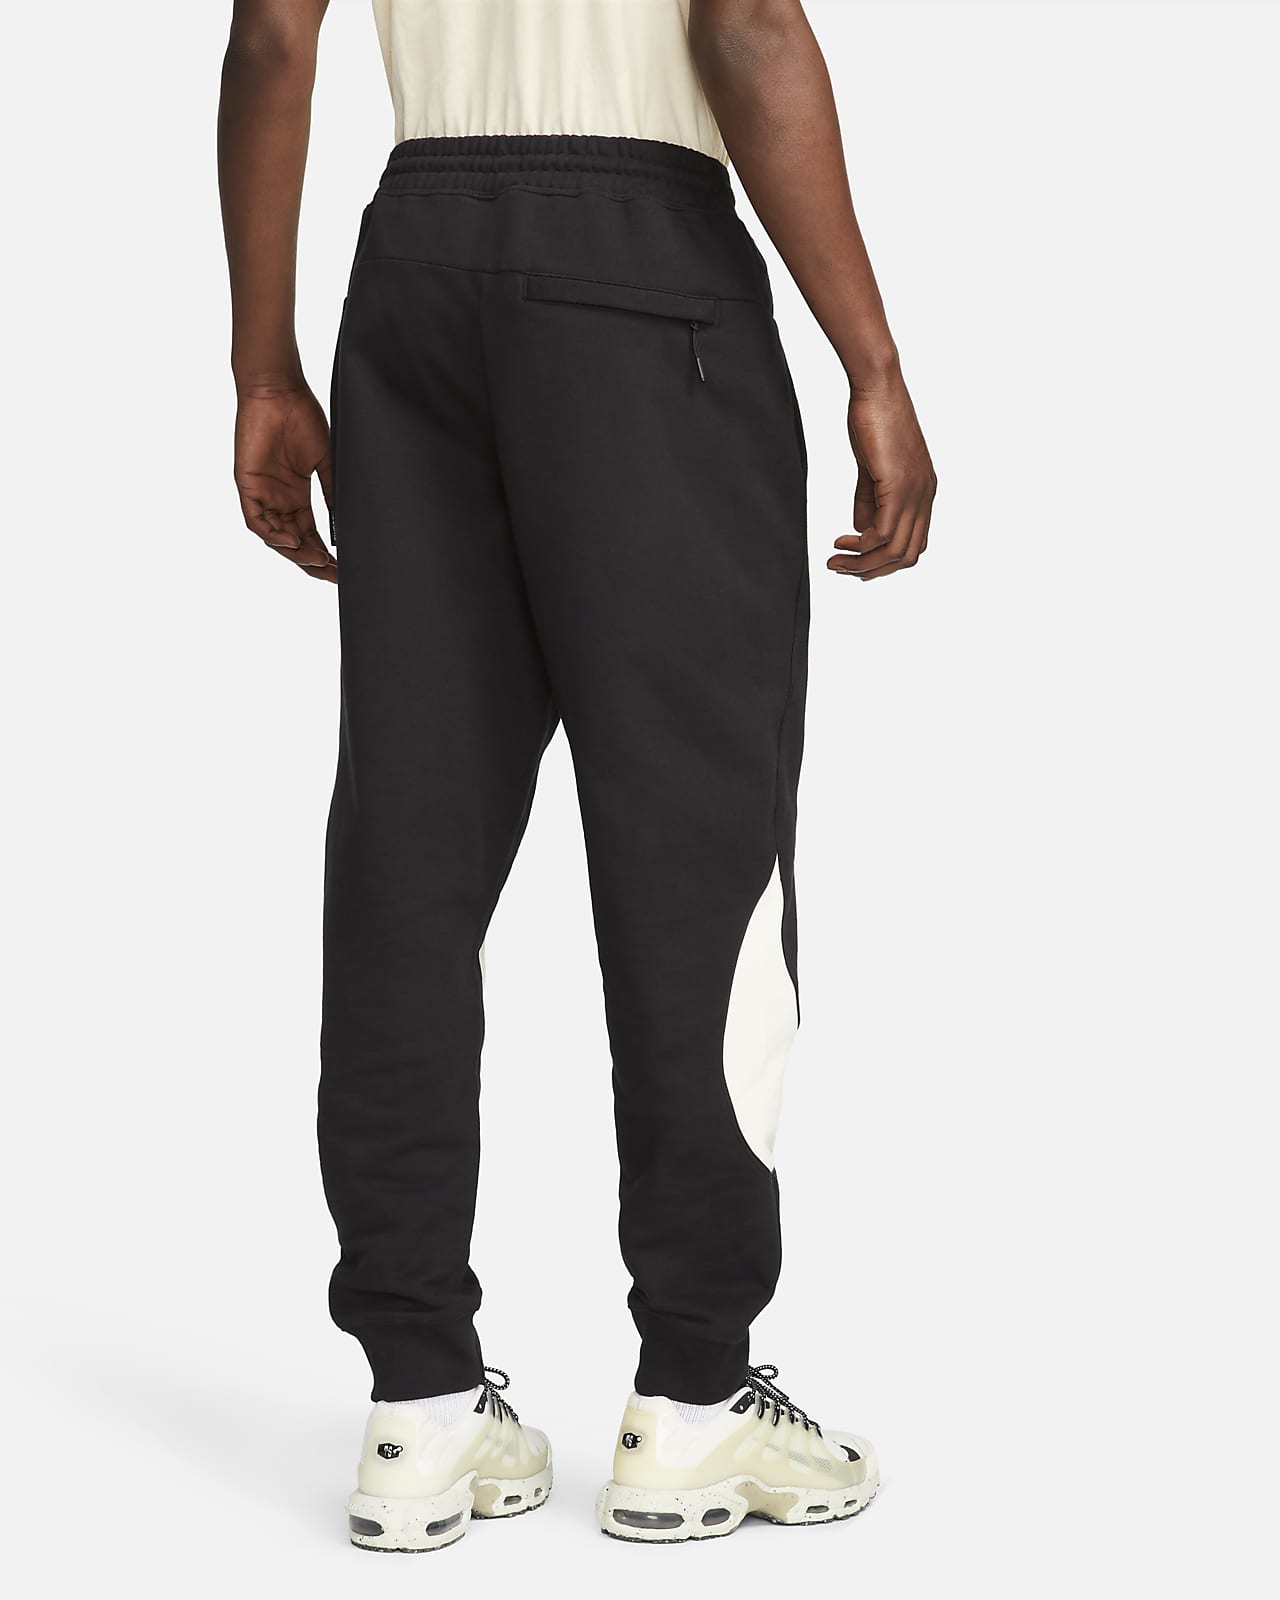 Nike Swoosh Men's Fleece Pants